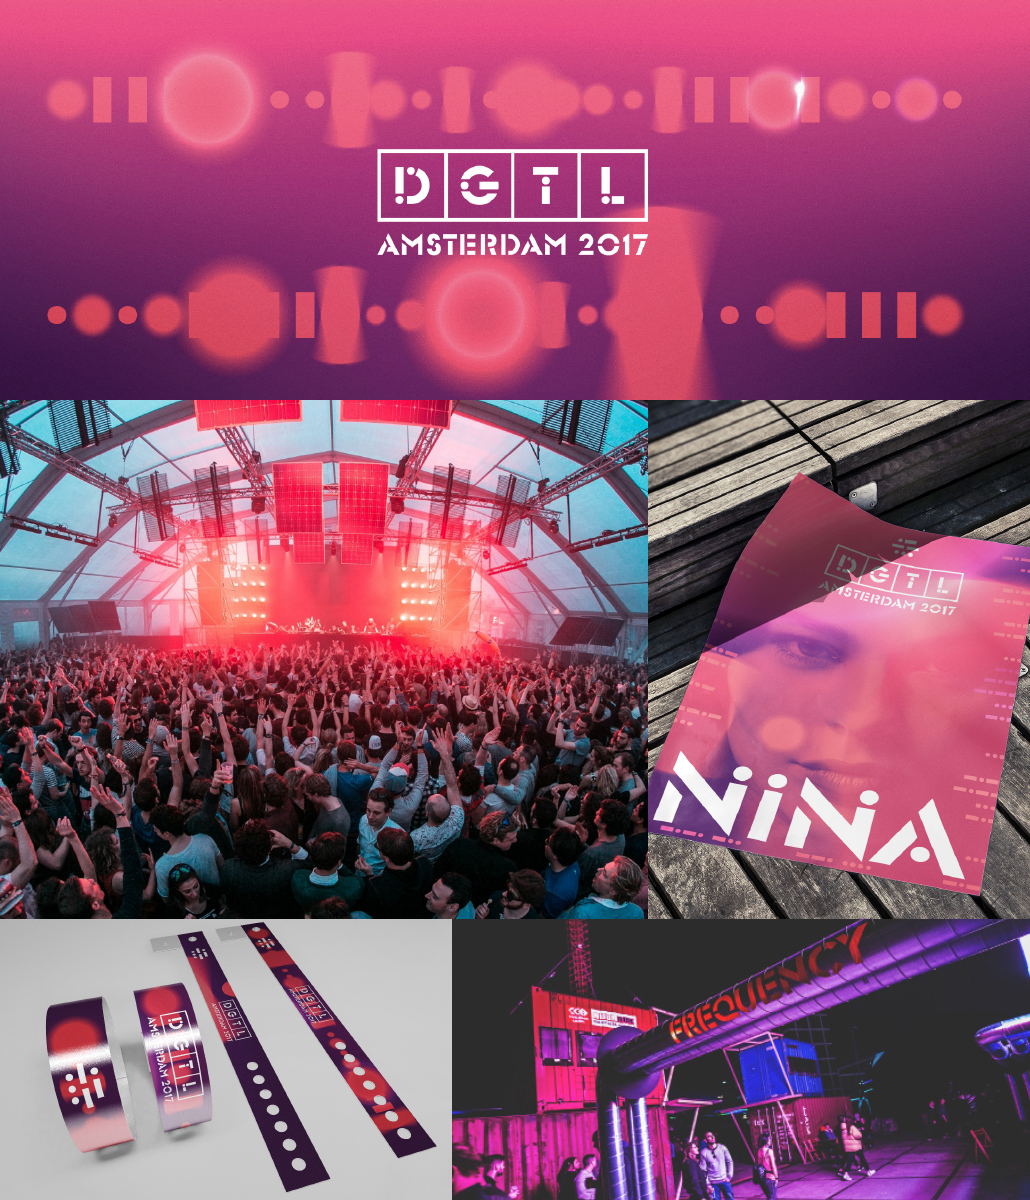 dgtl festival digital amsterdam Netherlands barcelona electronic music morse code